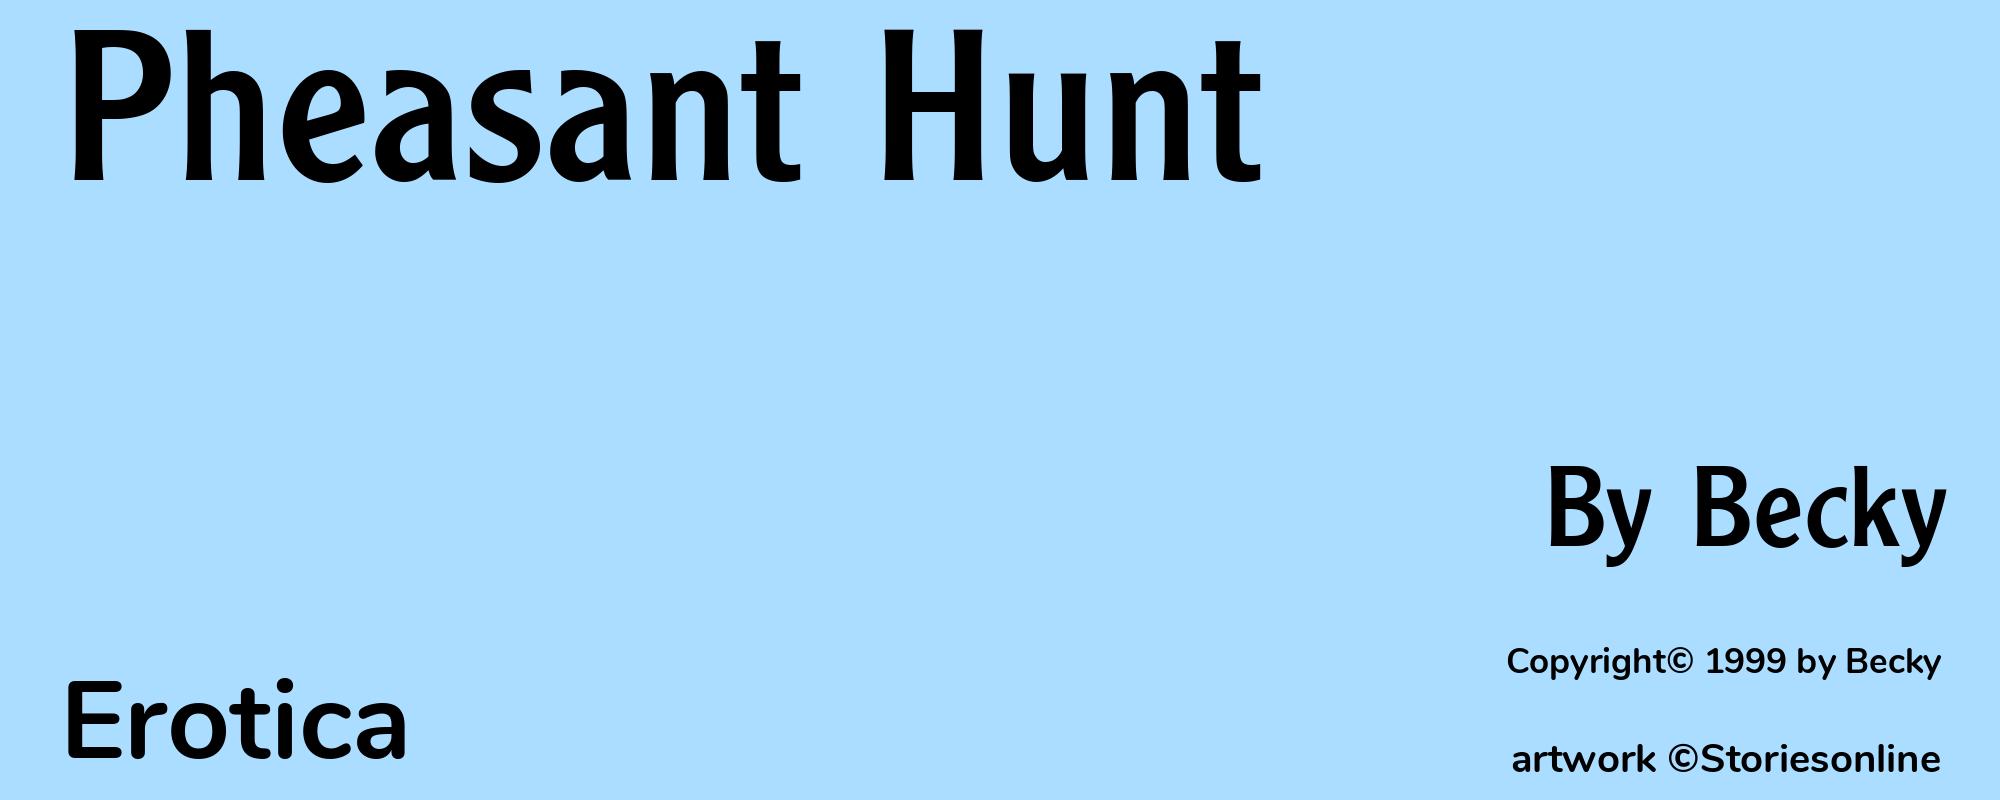 Pheasant Hunt - Cover